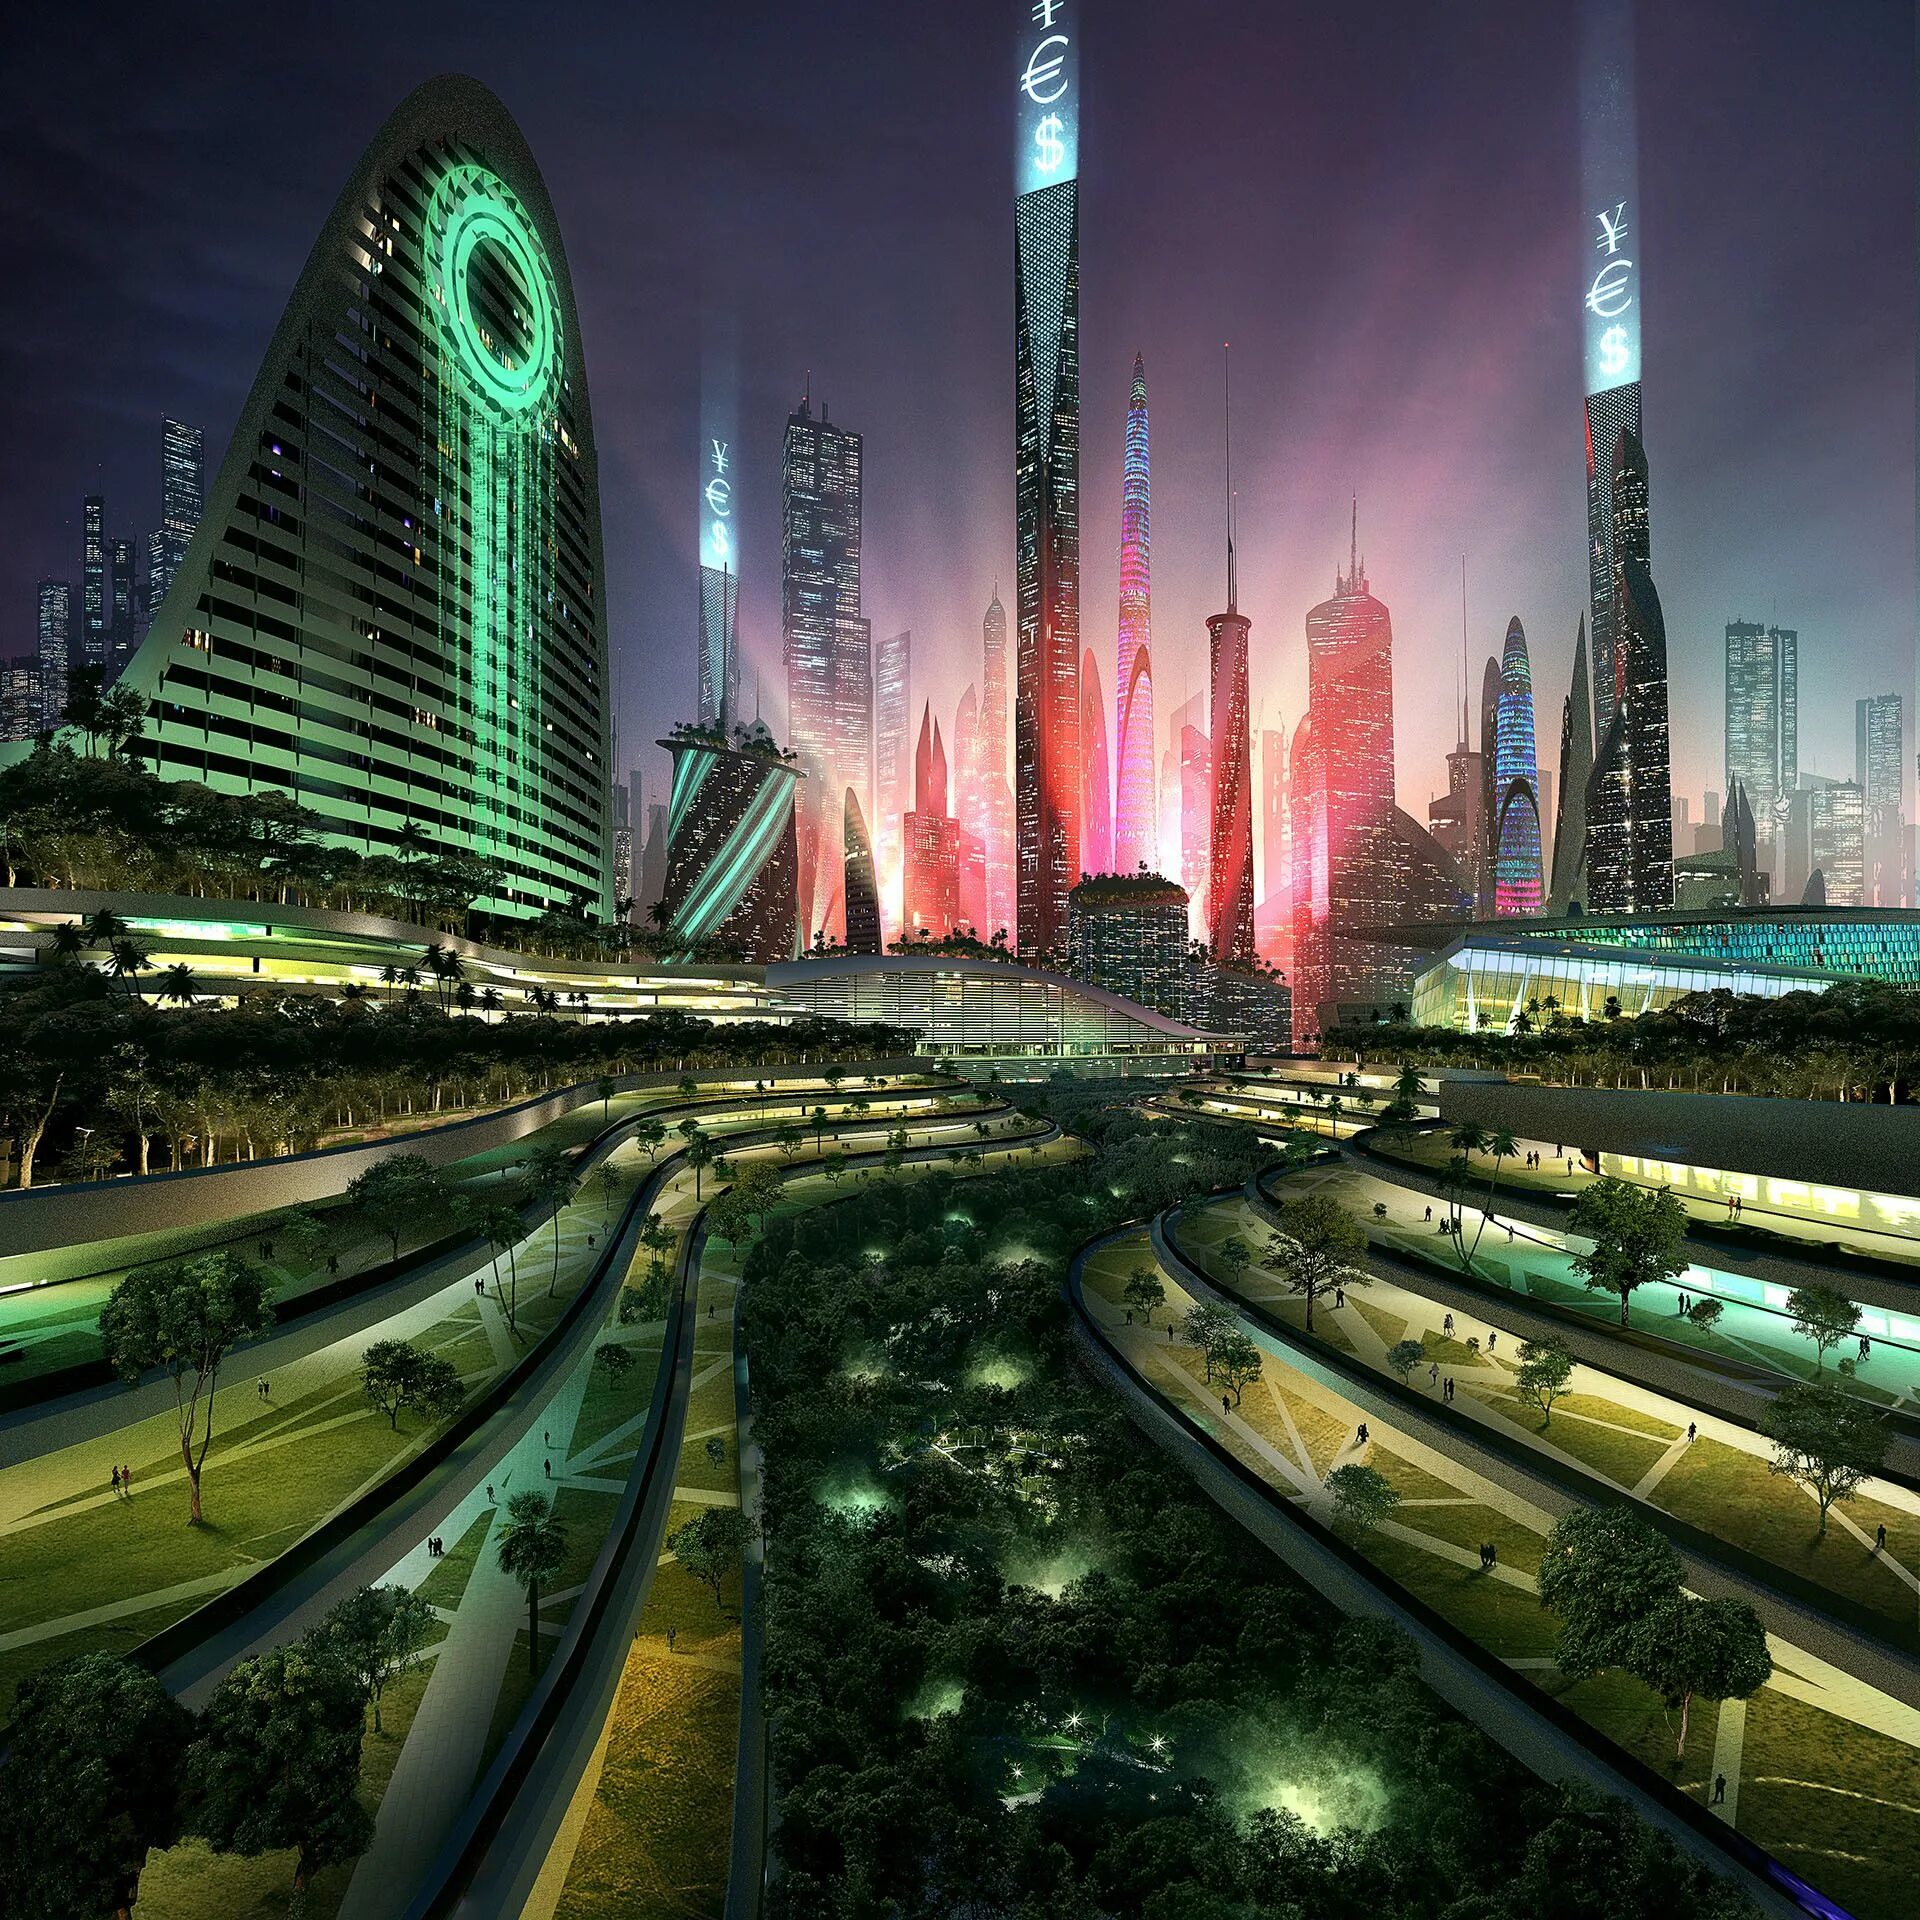 Далекое будущее. Утопия китбаш. Sci Fi утопия. Город утопия арт. Город будущего арт футуристический утопия.